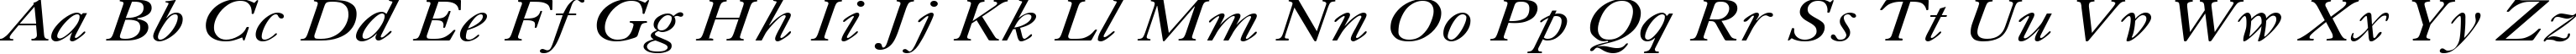 Пример написания английского алфавита шрифтом Caslon Italic:001.001